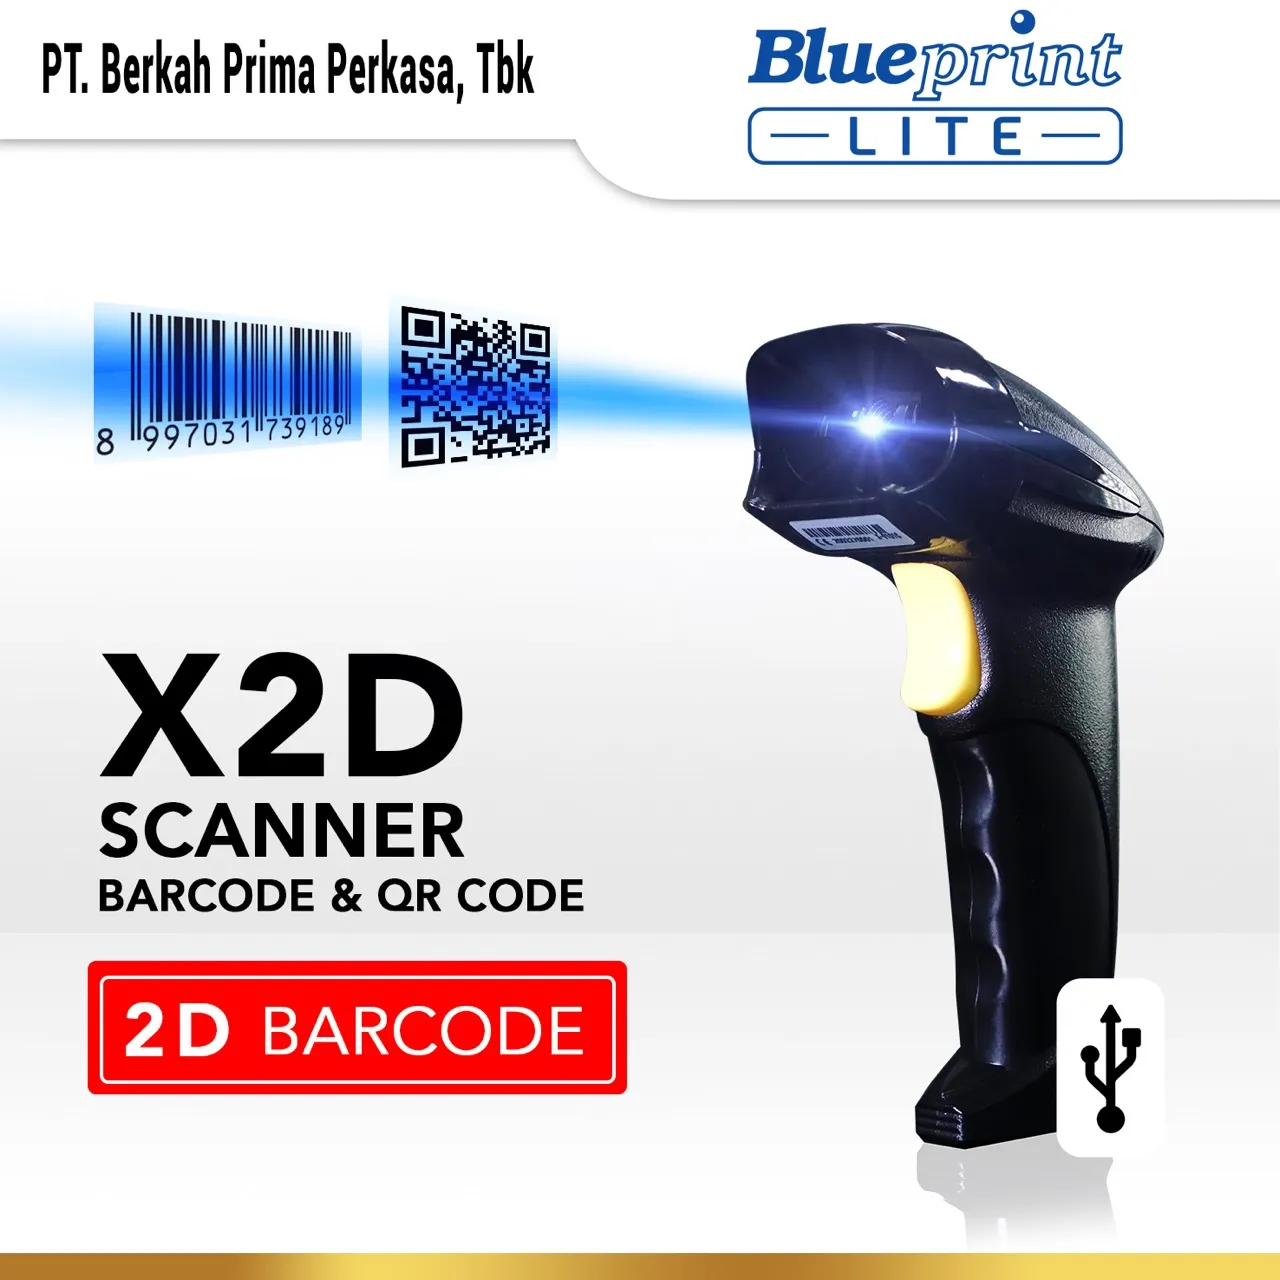 Barcode Scanner 2D USB BLUEPRINT BP-LITEX2D, Scanner